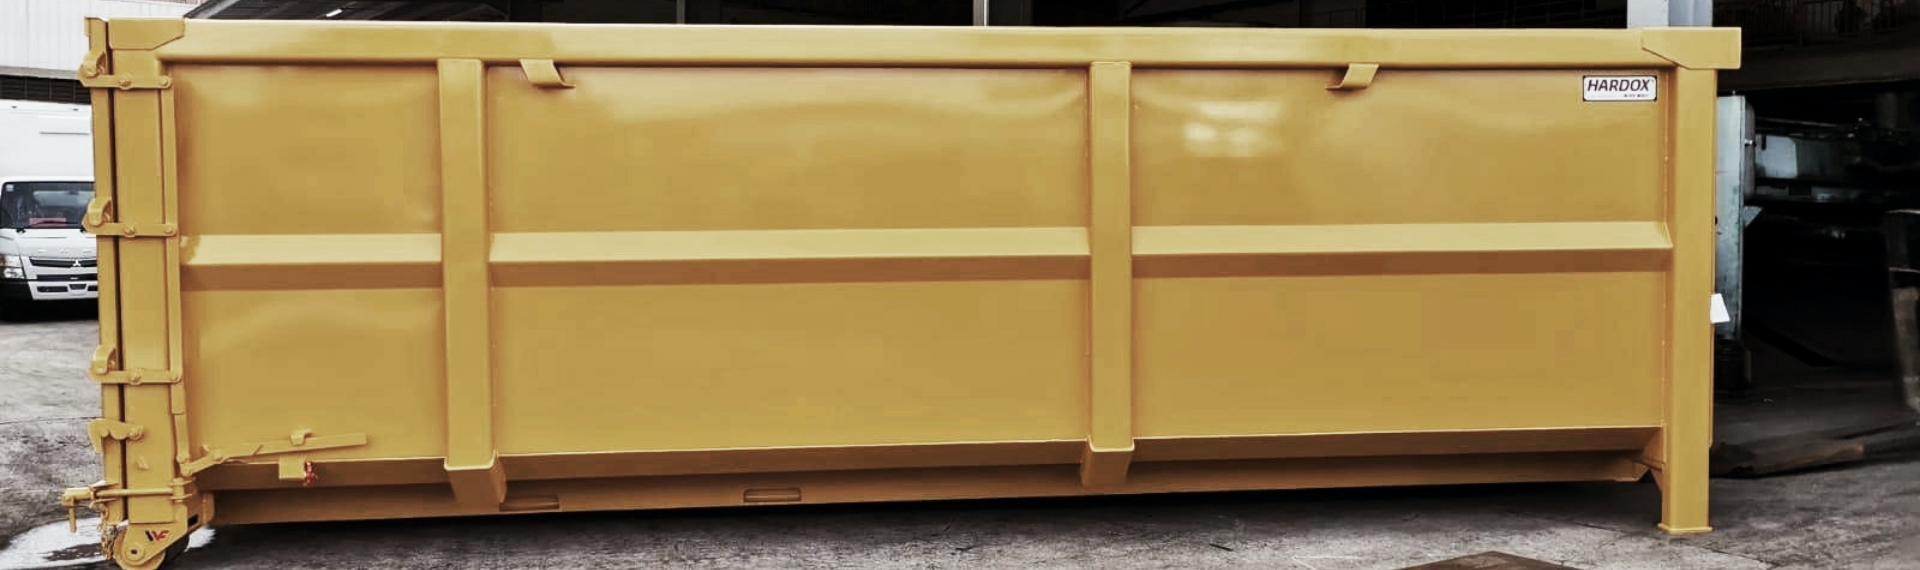 Một thùng chứa rác thải bằng thép màu vàng sáng bóng được chế tạo bằng thép Hardox® HiAce.